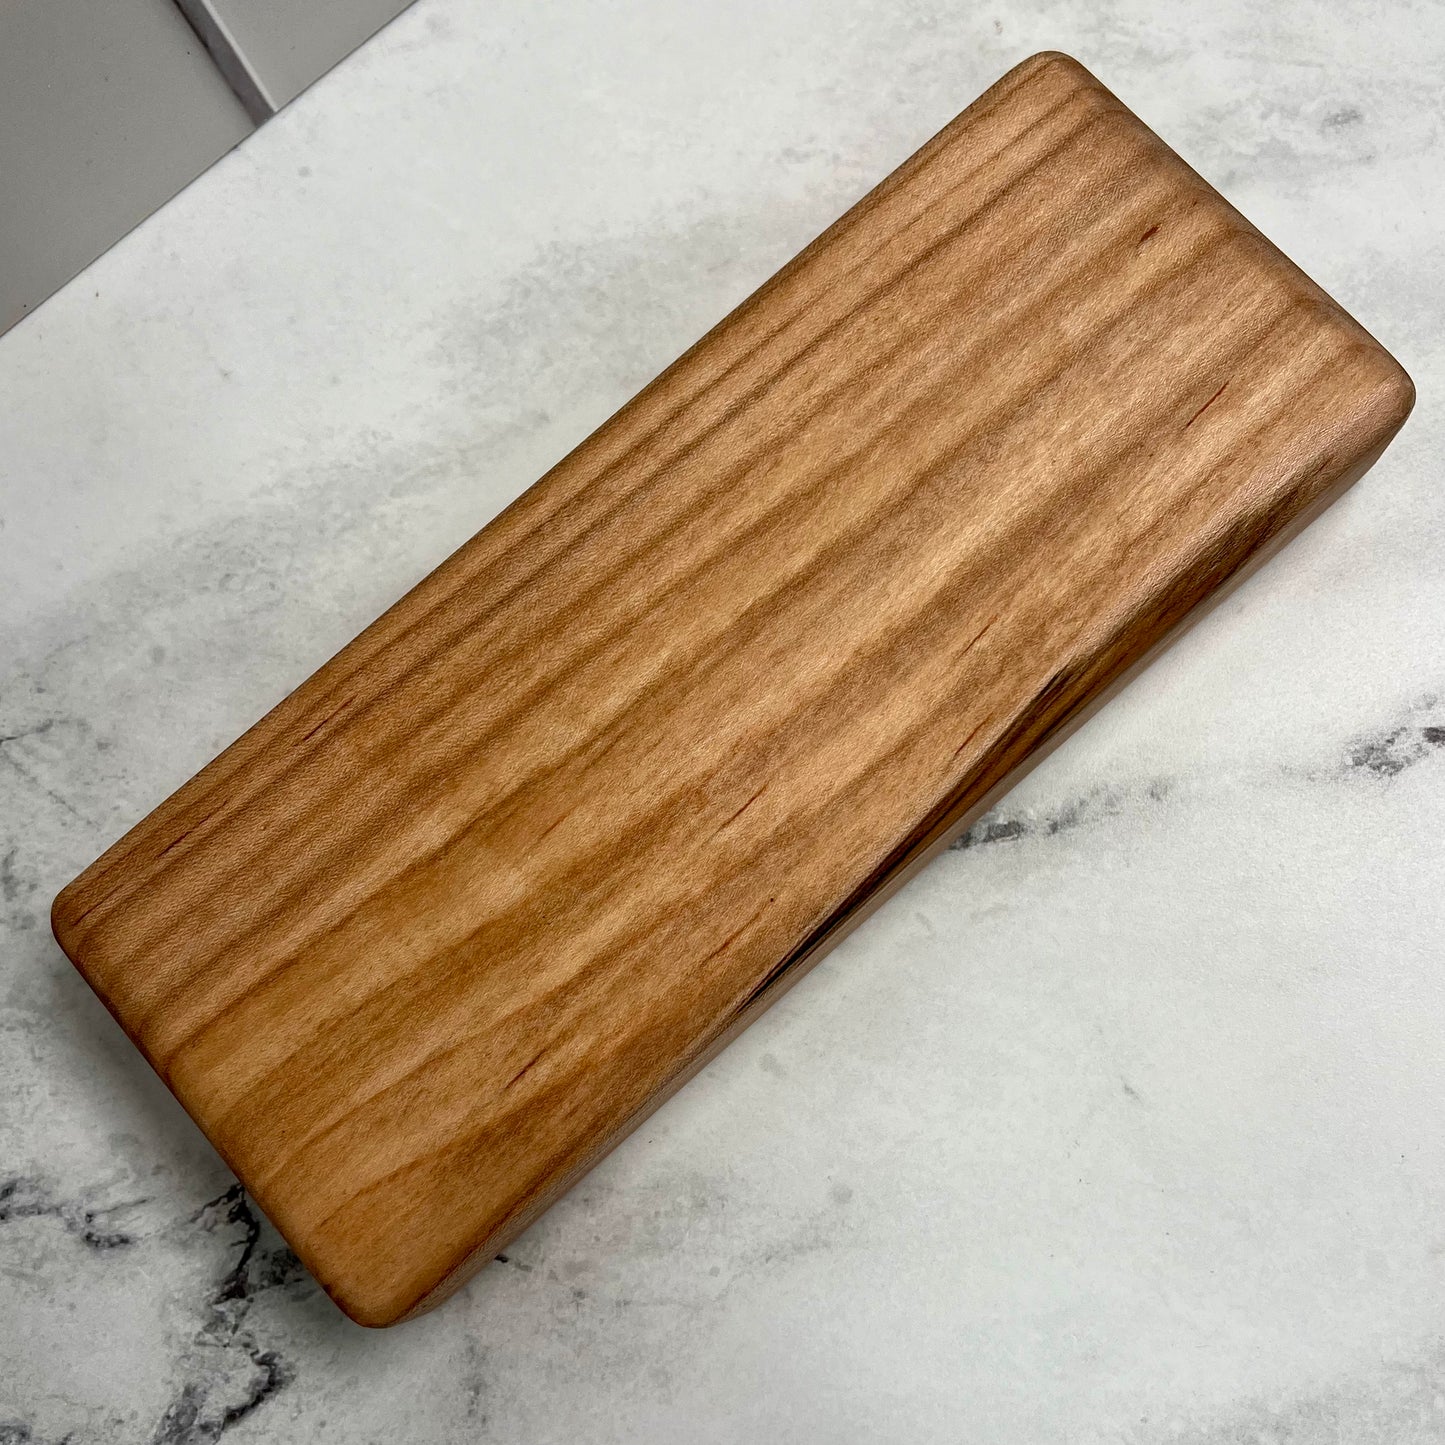 Mini Maple Bar Board 3.5x8.5 Inch